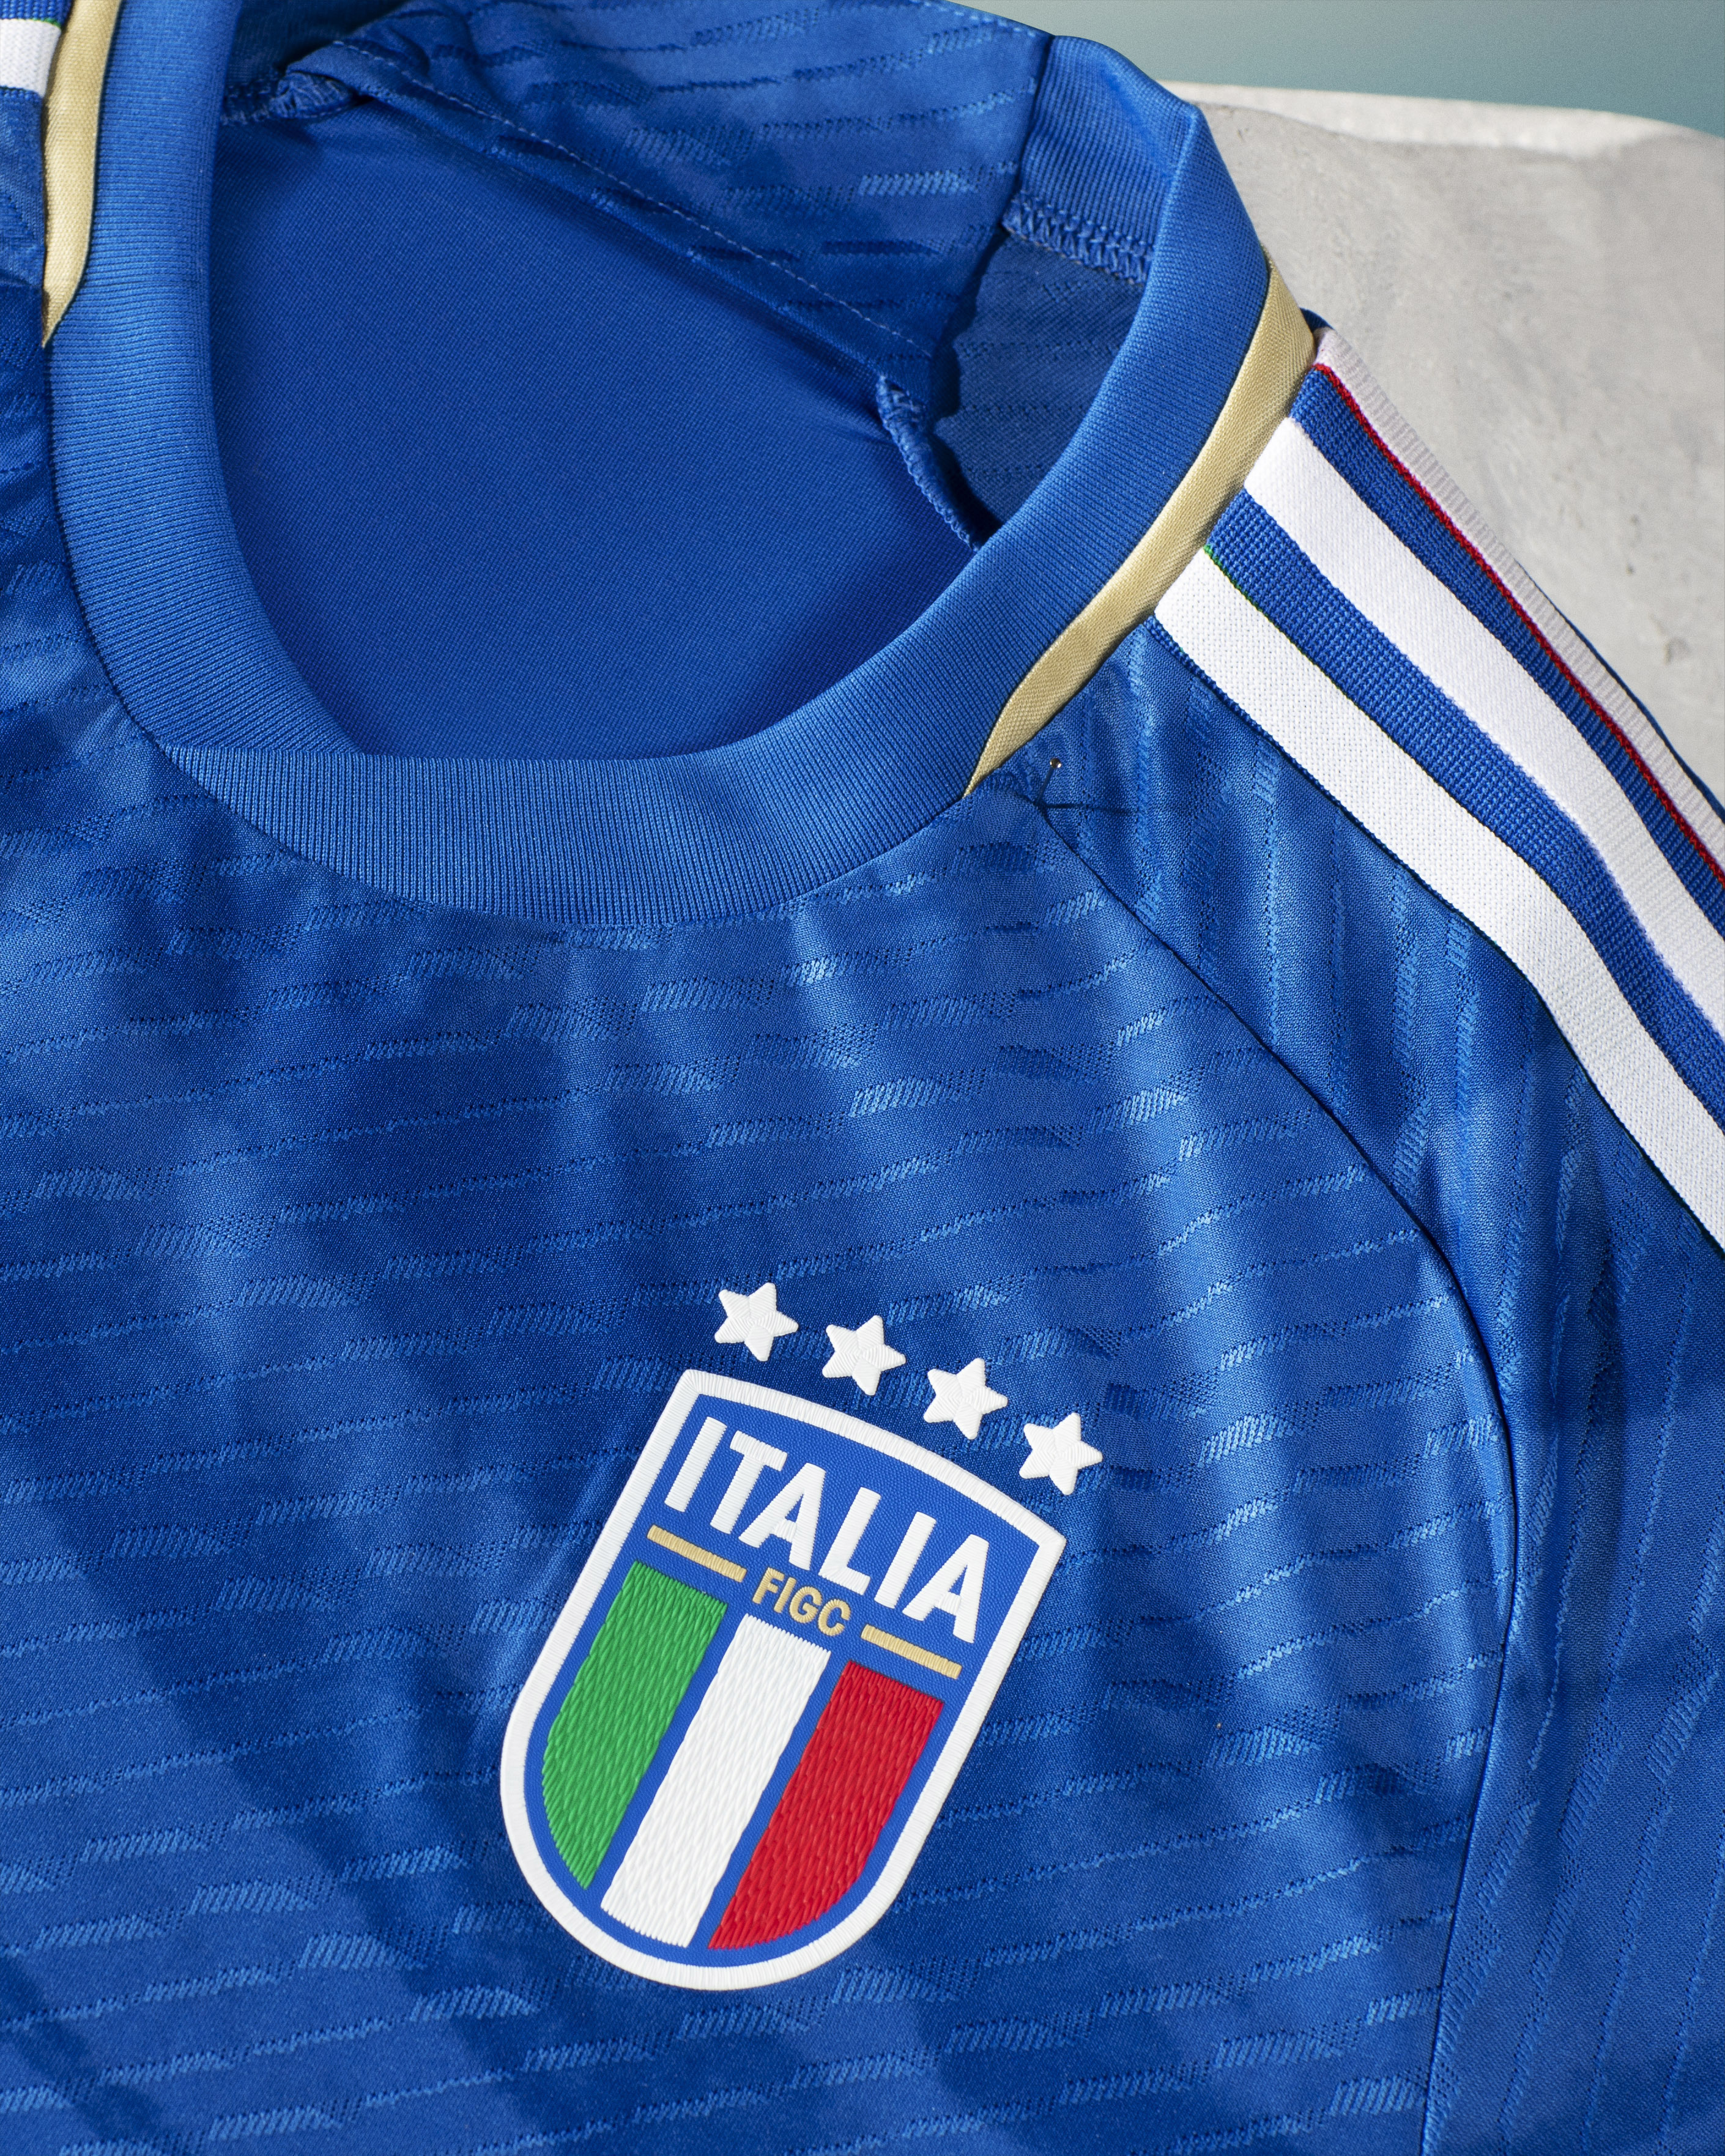 Adidas y la Federación Italiana de Fútbol presentan las nuevas equipaciones  - CMD Sport